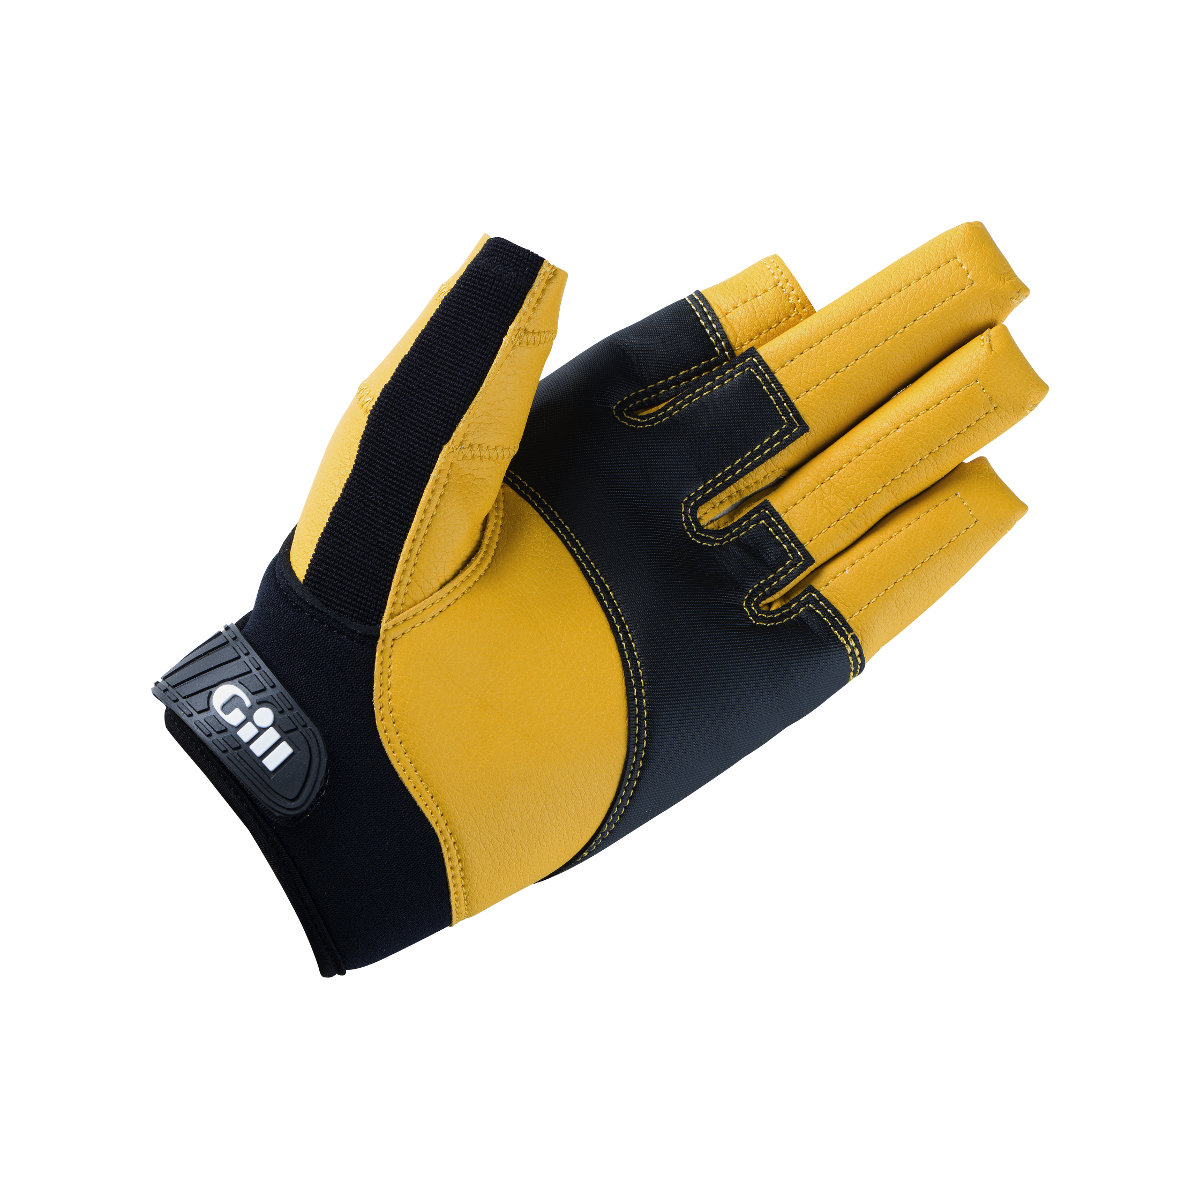 Gill Pro gants de voile à doigts longs - noir/jaune, taille XS